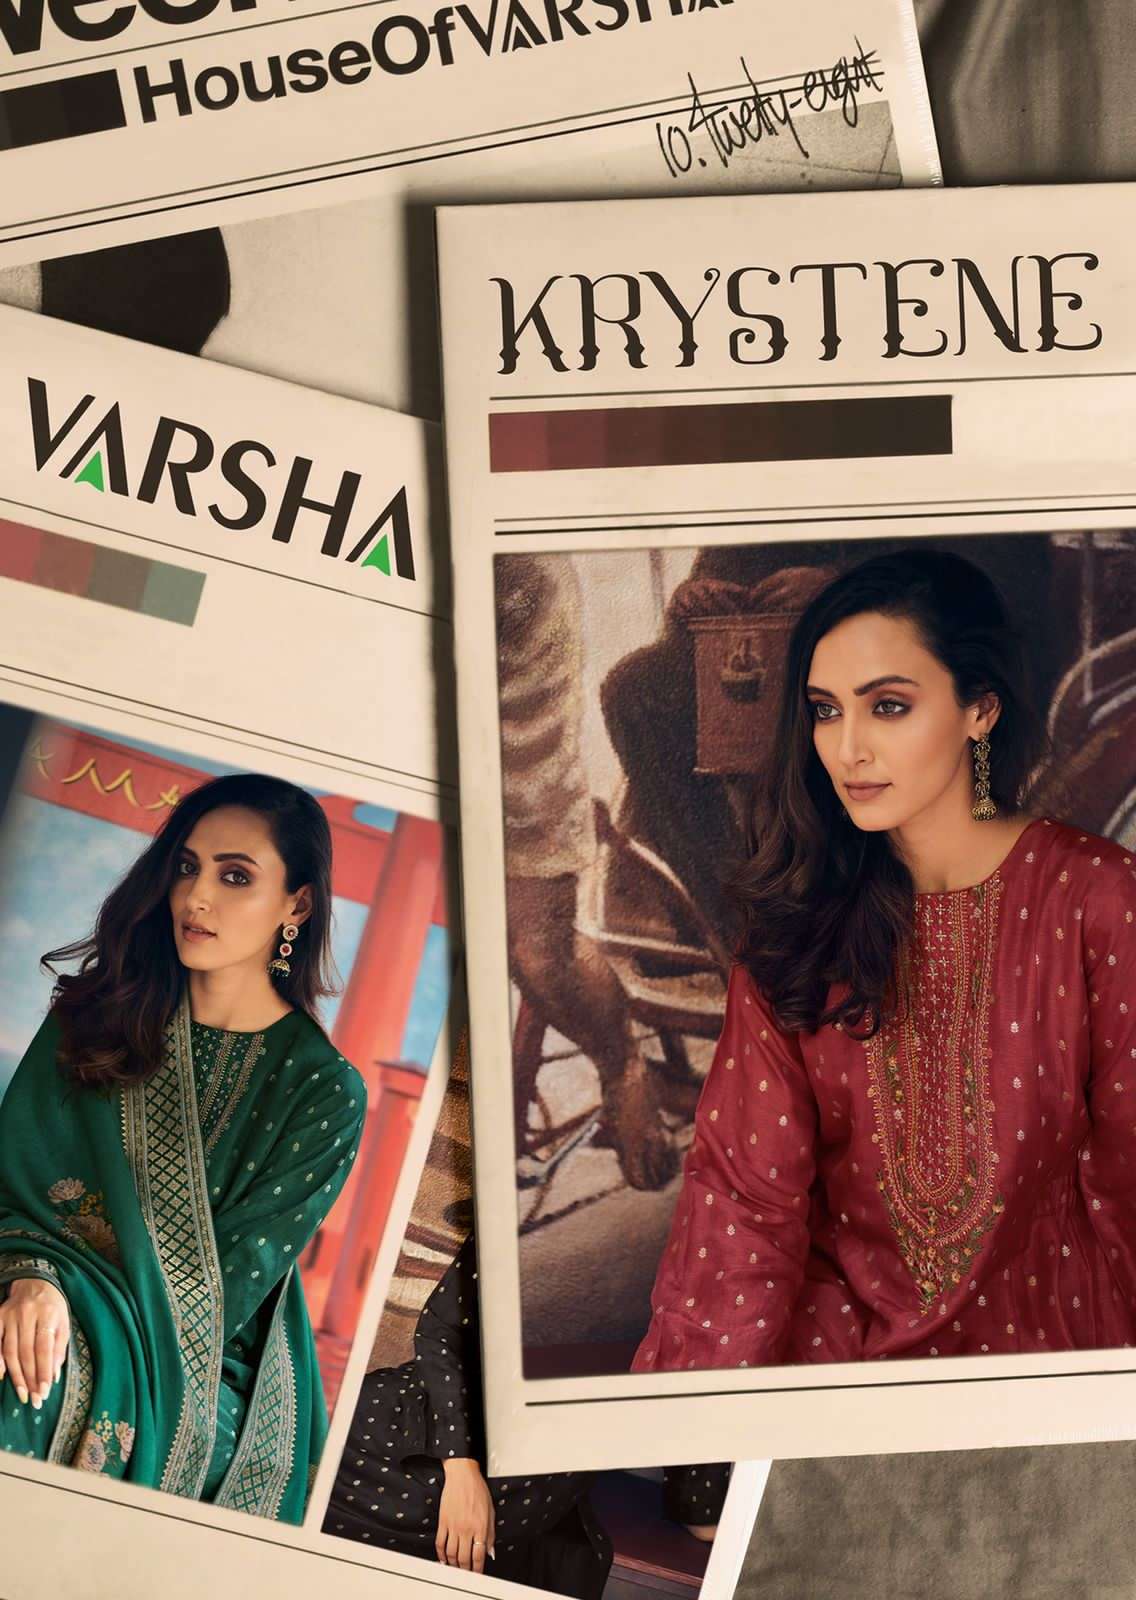 Varsha Krystene Exclsuive Designer Viscose Salwar kameez New Collection